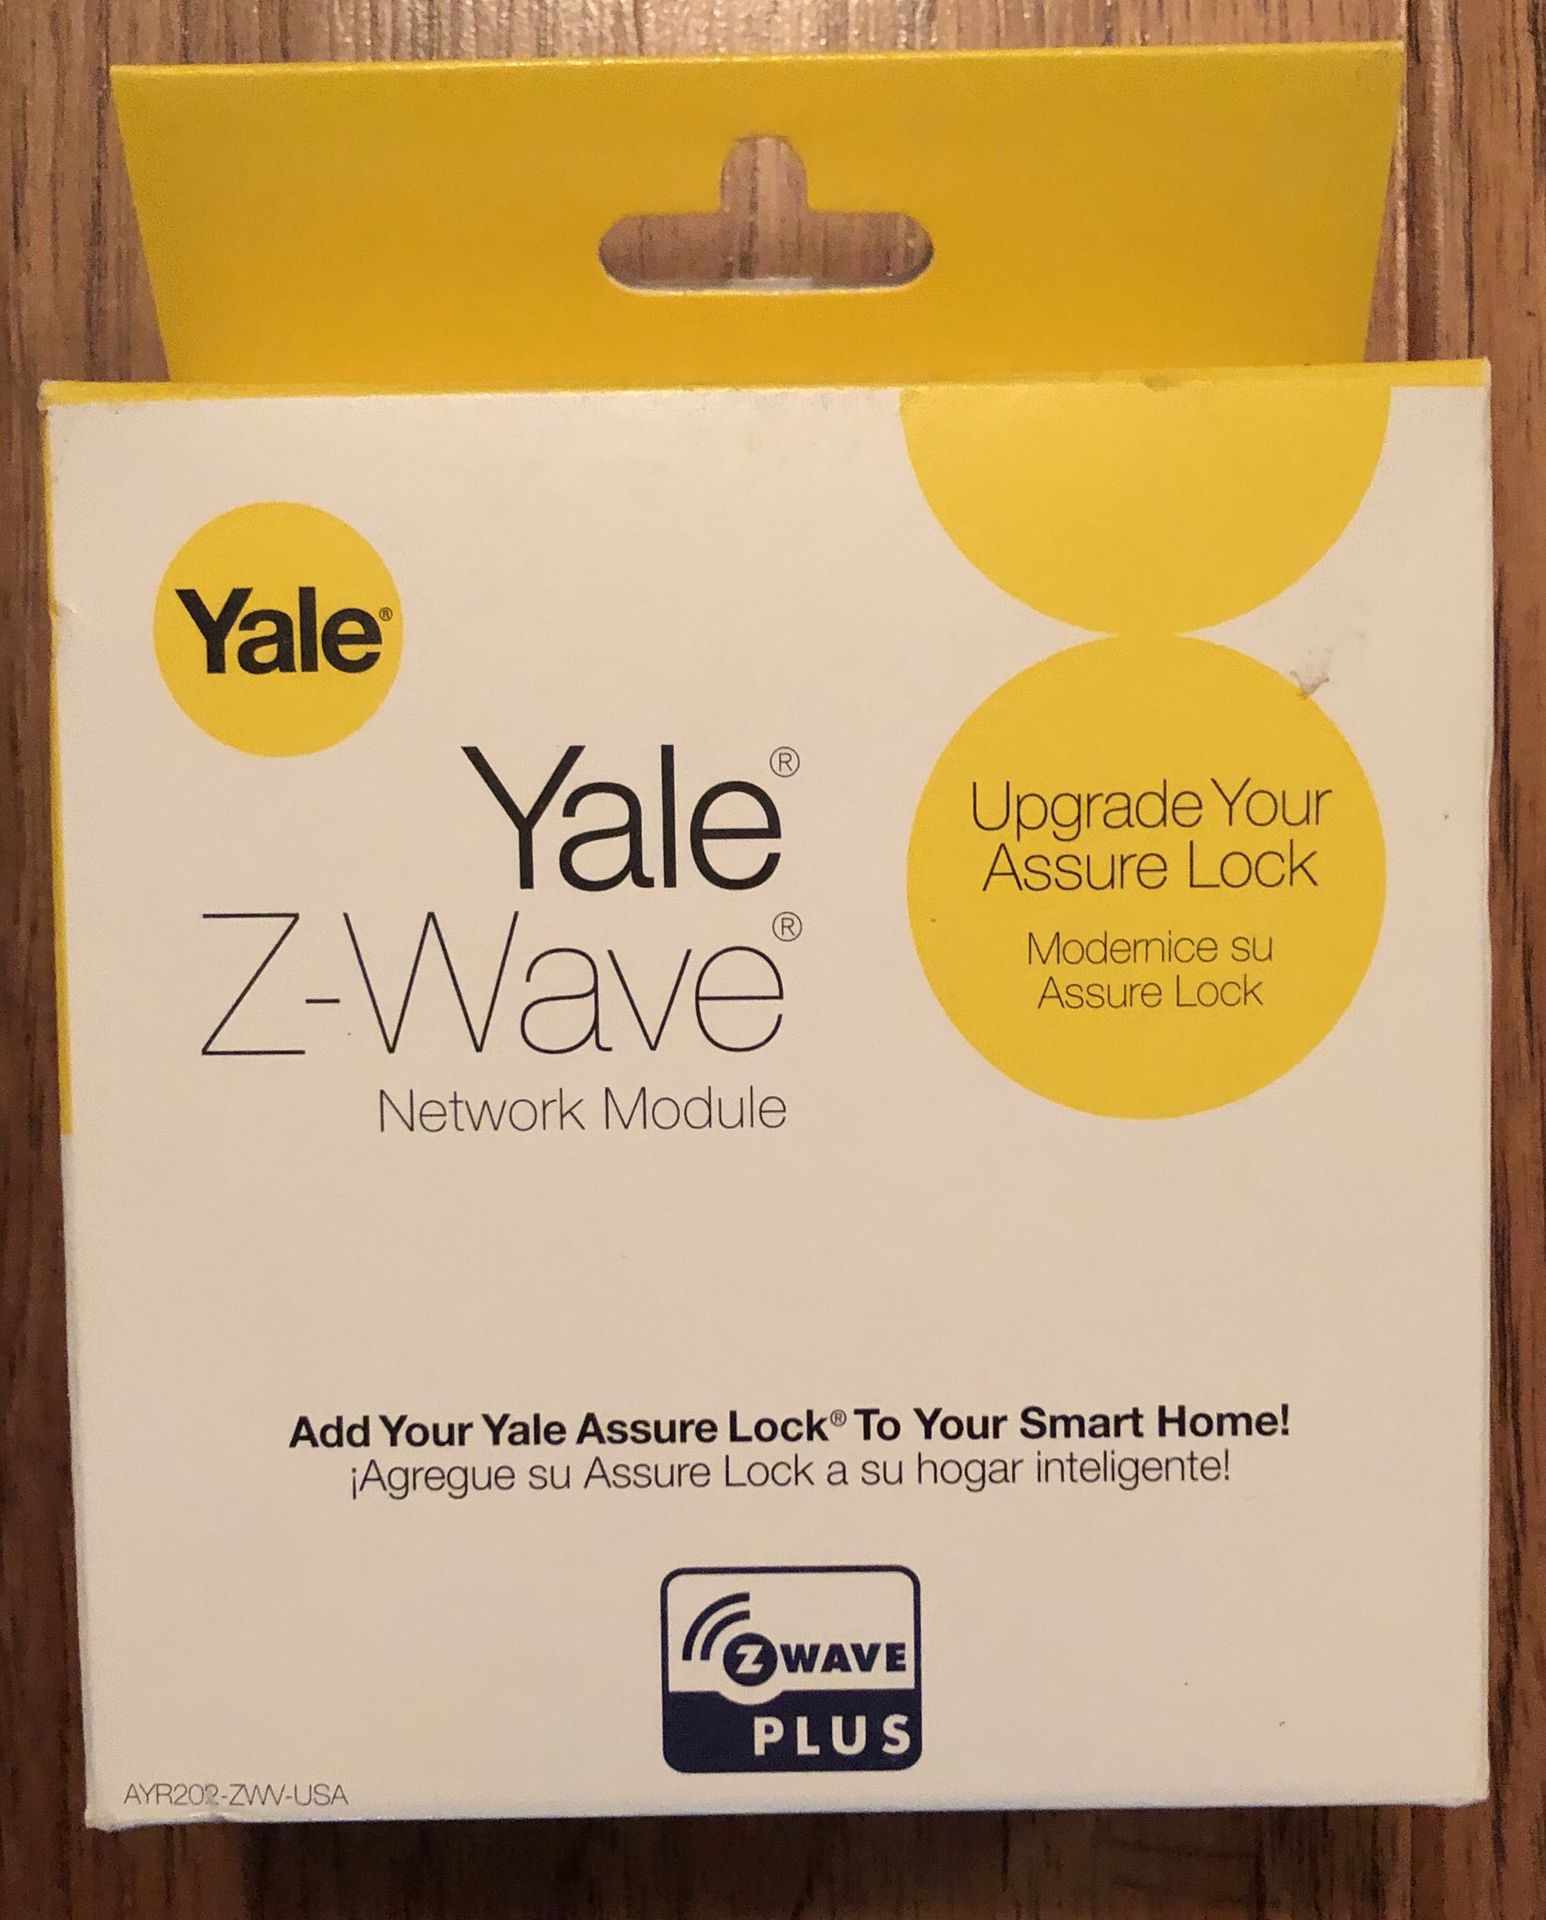 Yale Z-Wave Network Module.